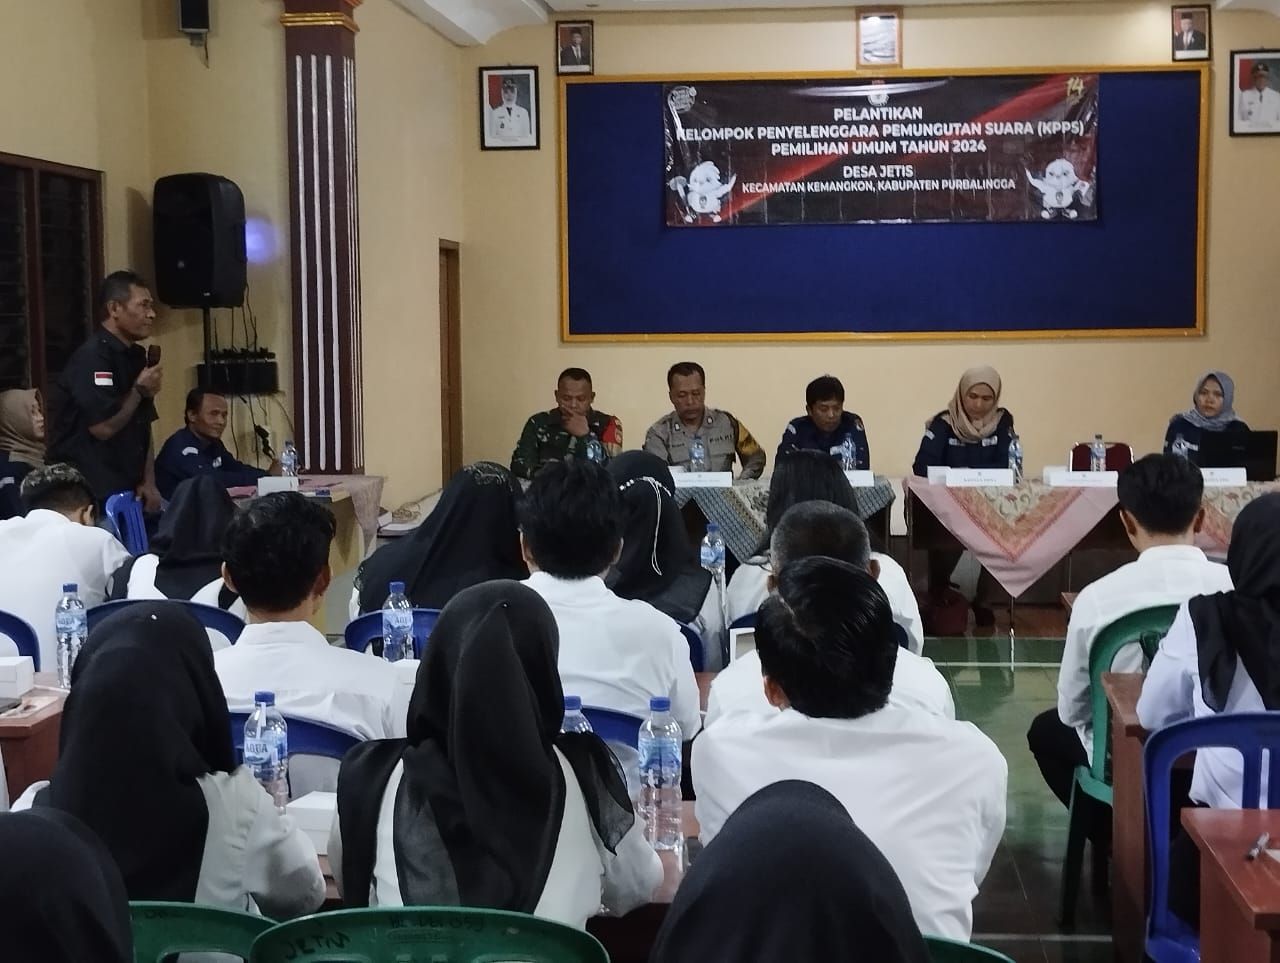 Pelantikan 70 Anggota KPPS Desa Jetis Kecamatan Kemangkon Purbalingga./Sudirman